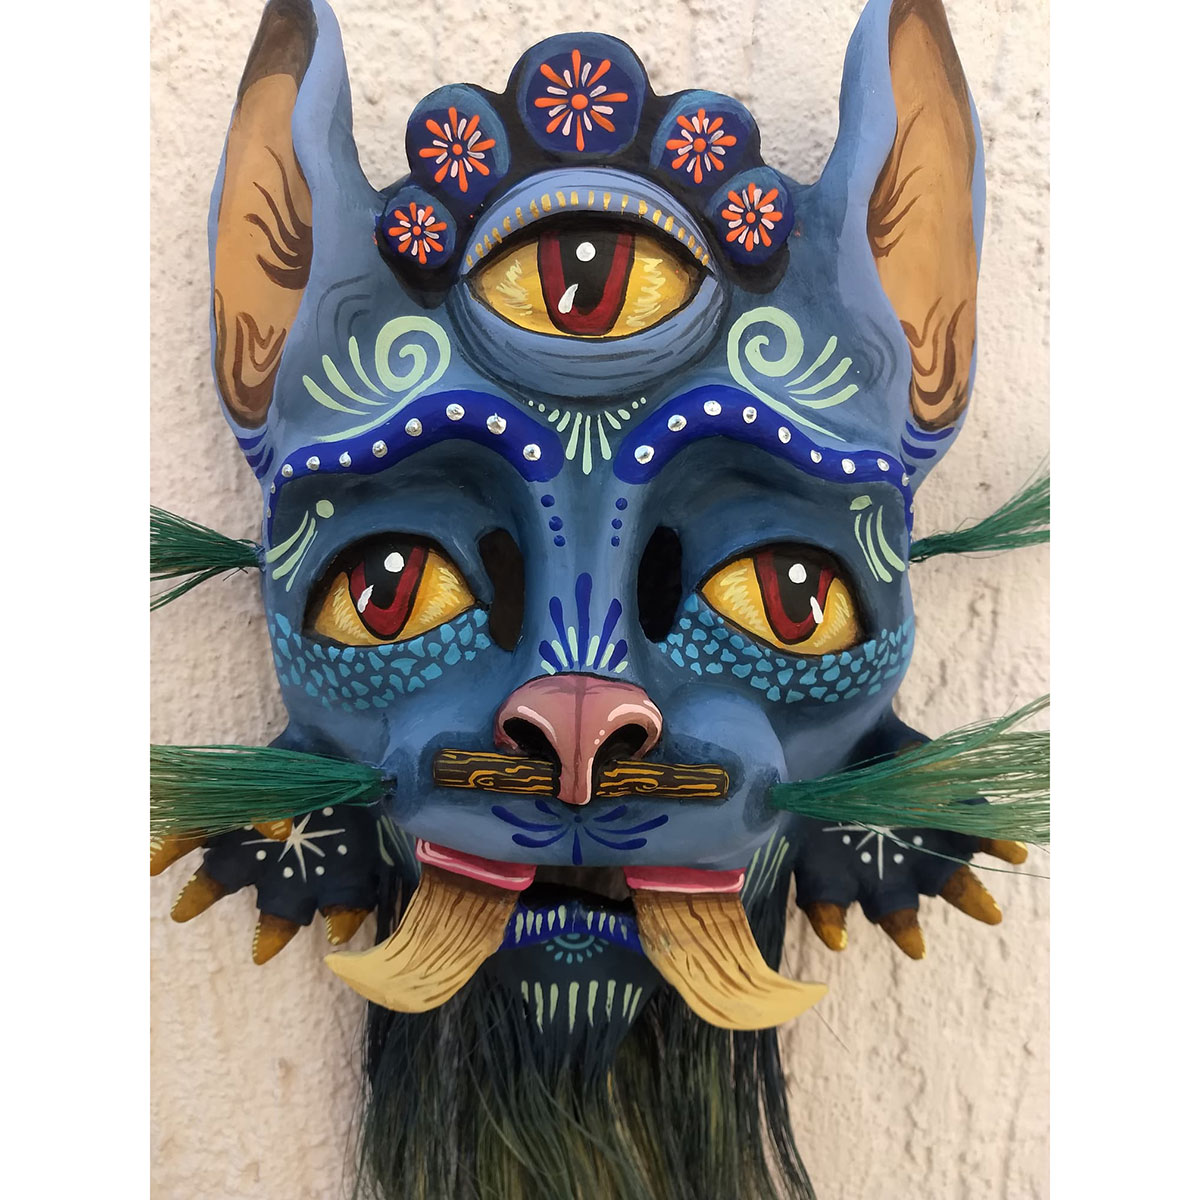 Cartoneria (Mexican Paper Mache) Isaias Alejandro Morales Delgado: Cemiztli (Puma Cat) Mask Alebrijes